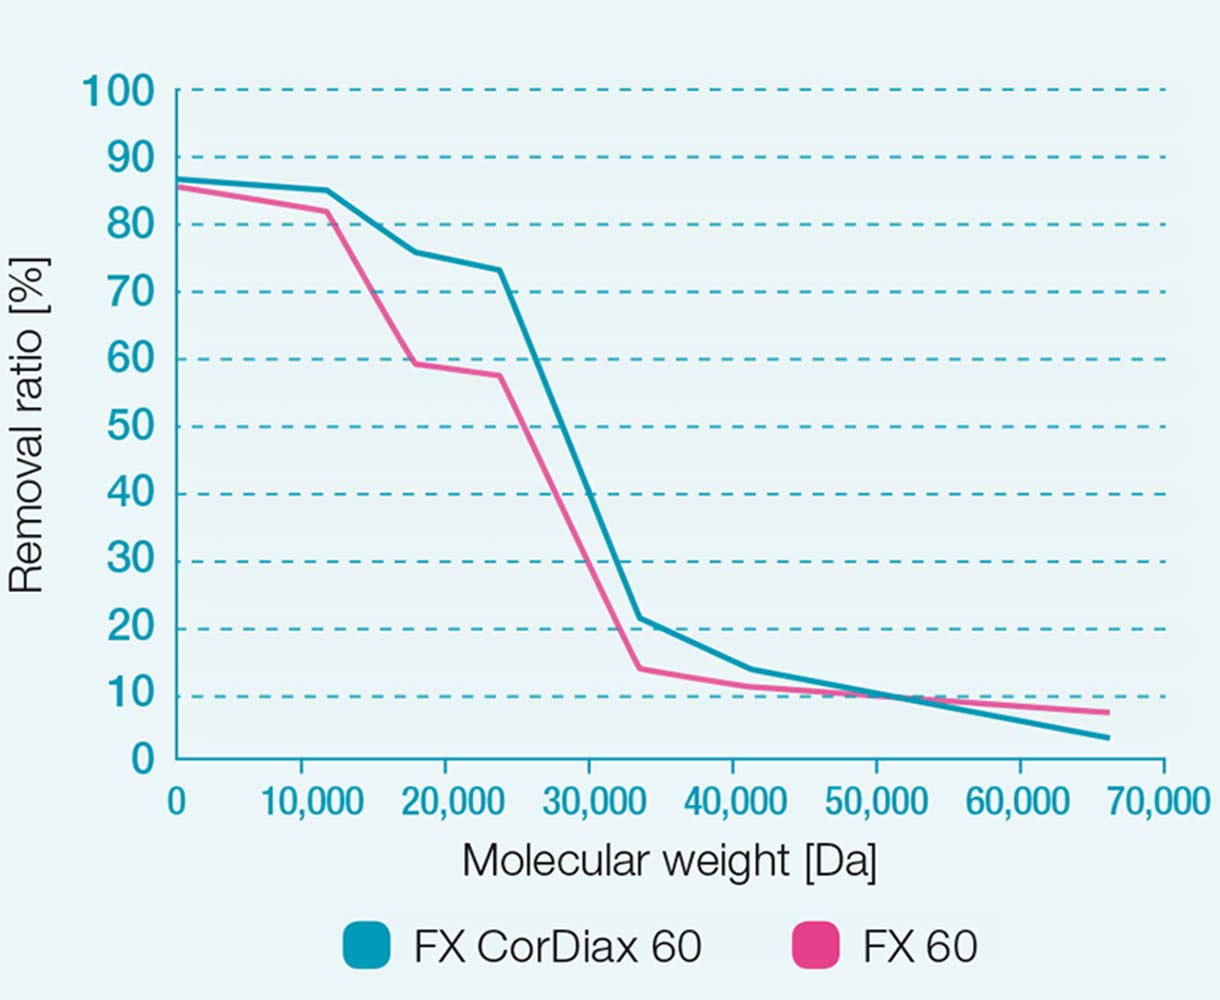 Rapporti di rimozione dei dializzatori FX 60 e FX CorDiax 60